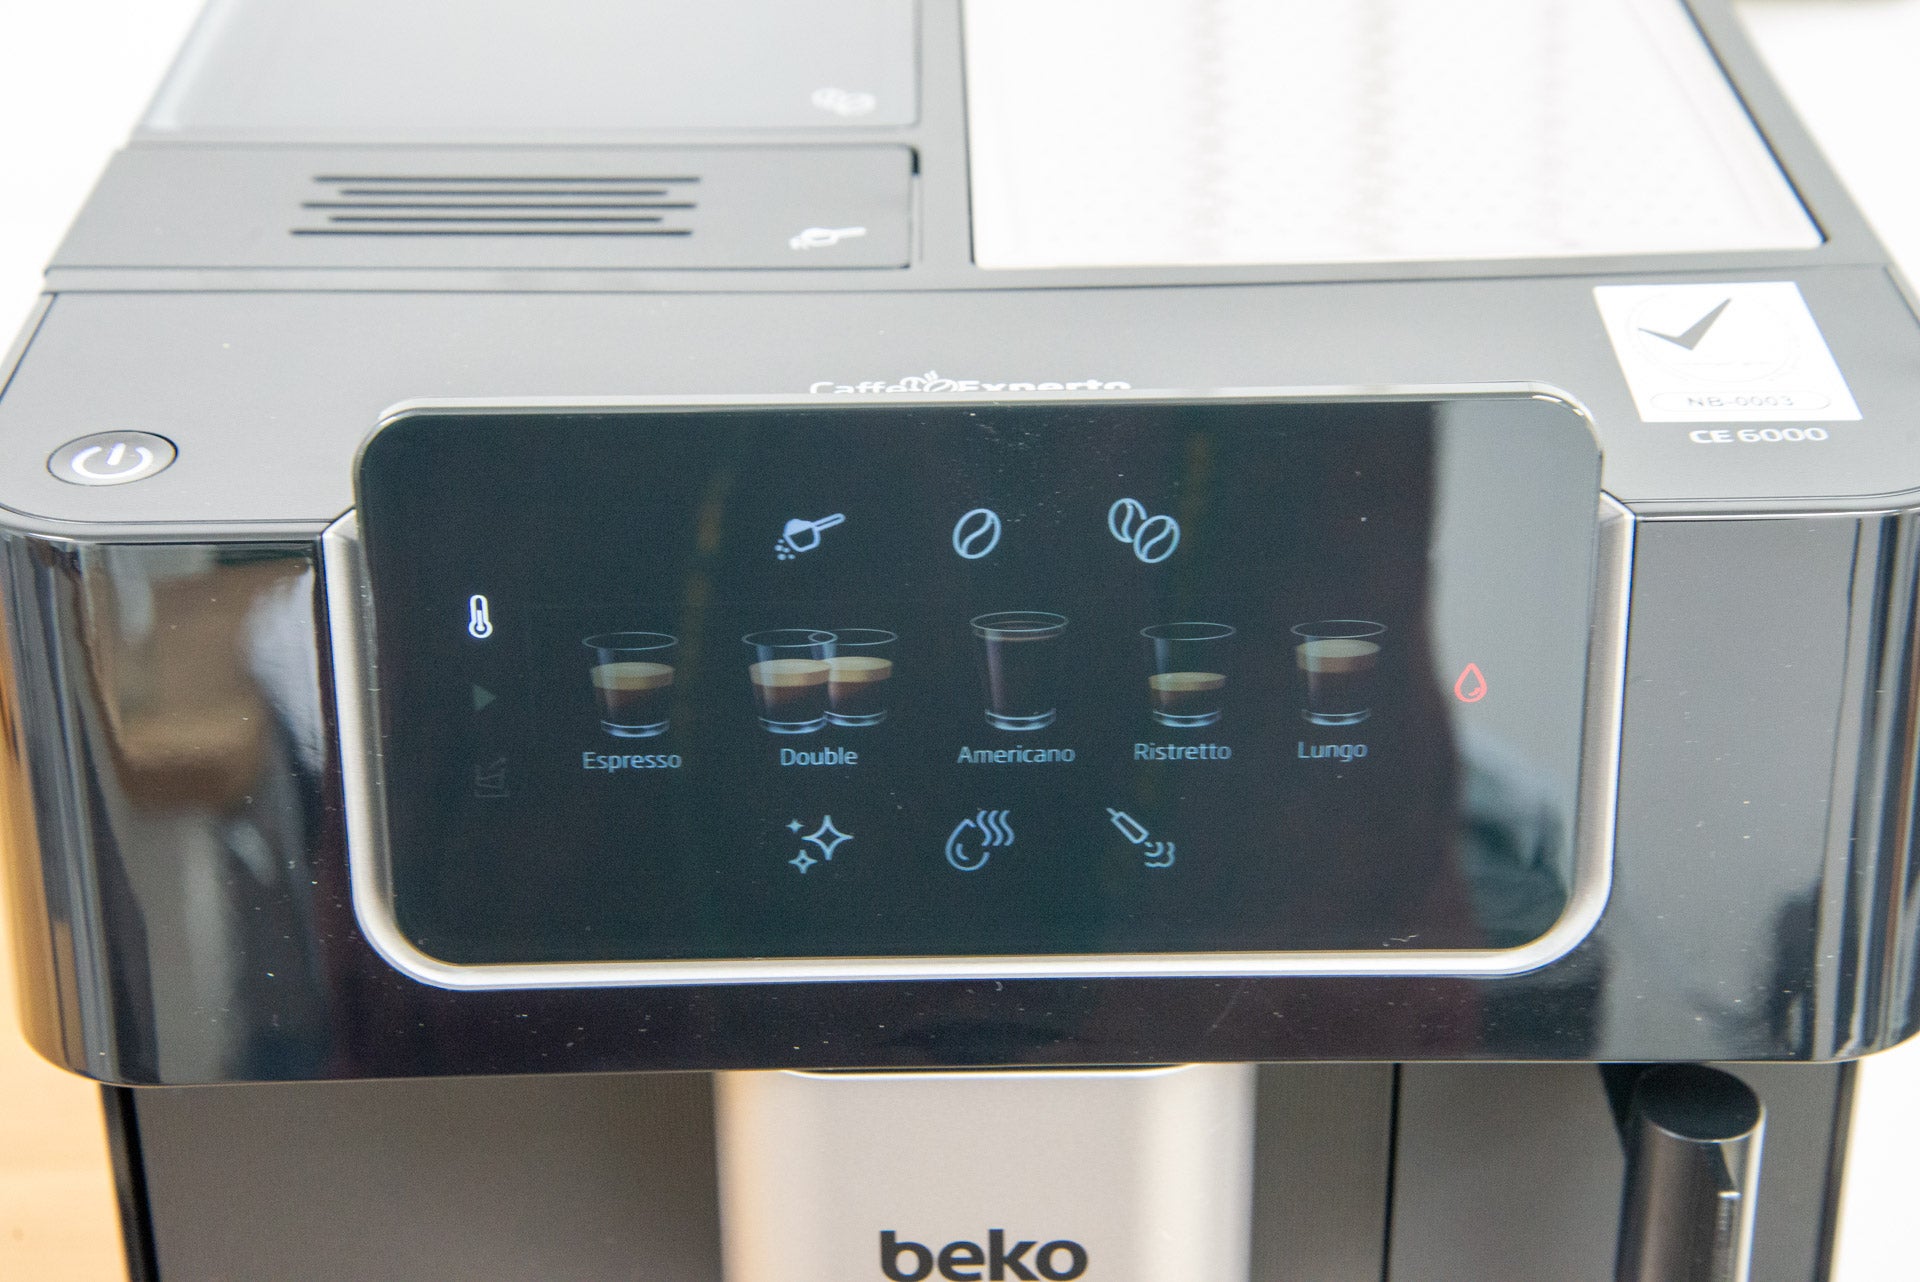 Controles de varilla de vapor para máquina de café en grano Beko CaffeExperto